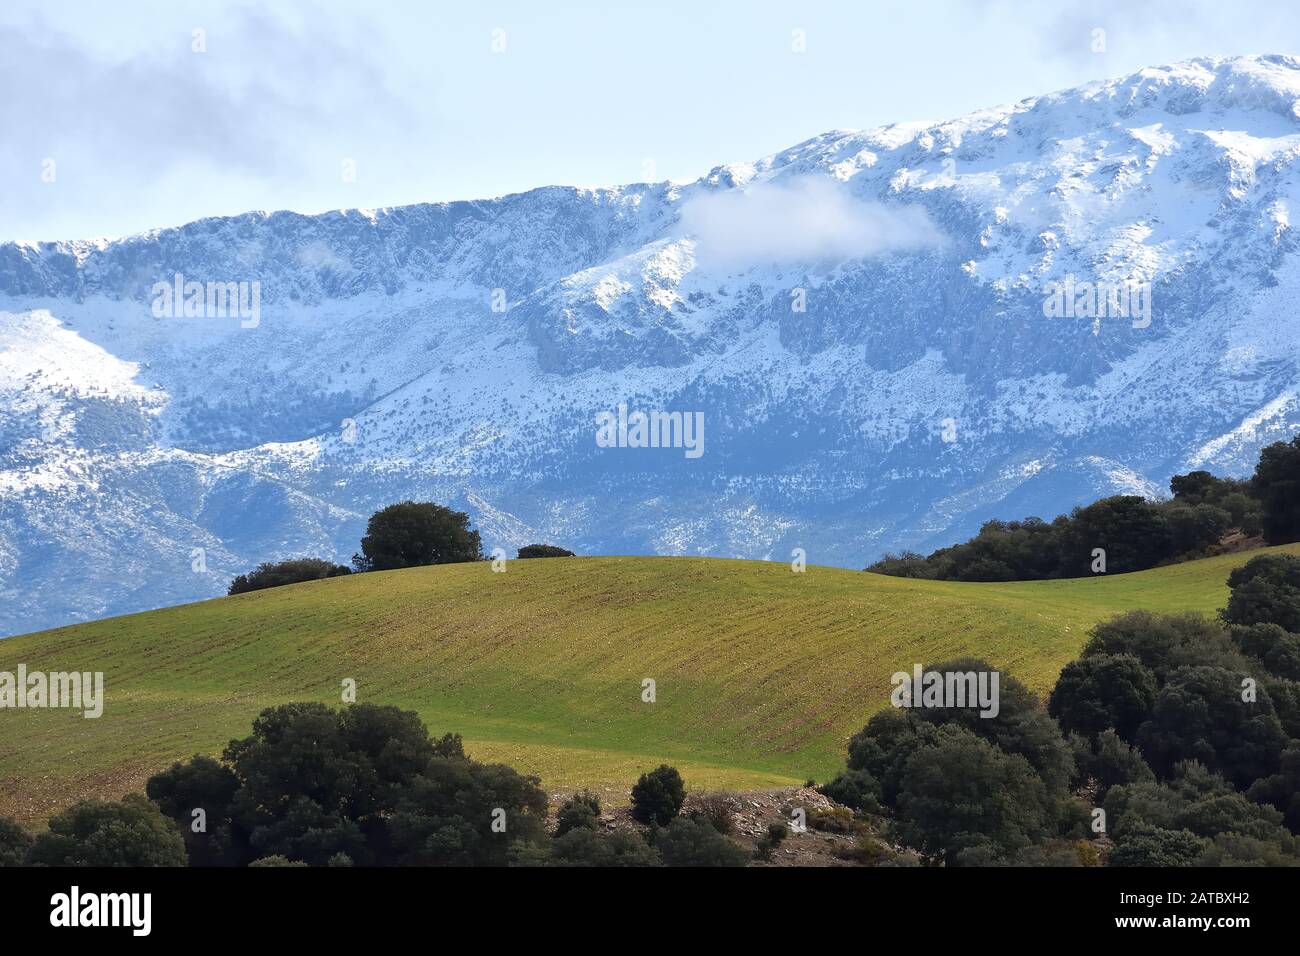 Paesaggio andaluso in inverno, con una collina verde circondata da lecci e montagne innevate sullo sfondo Foto Stock